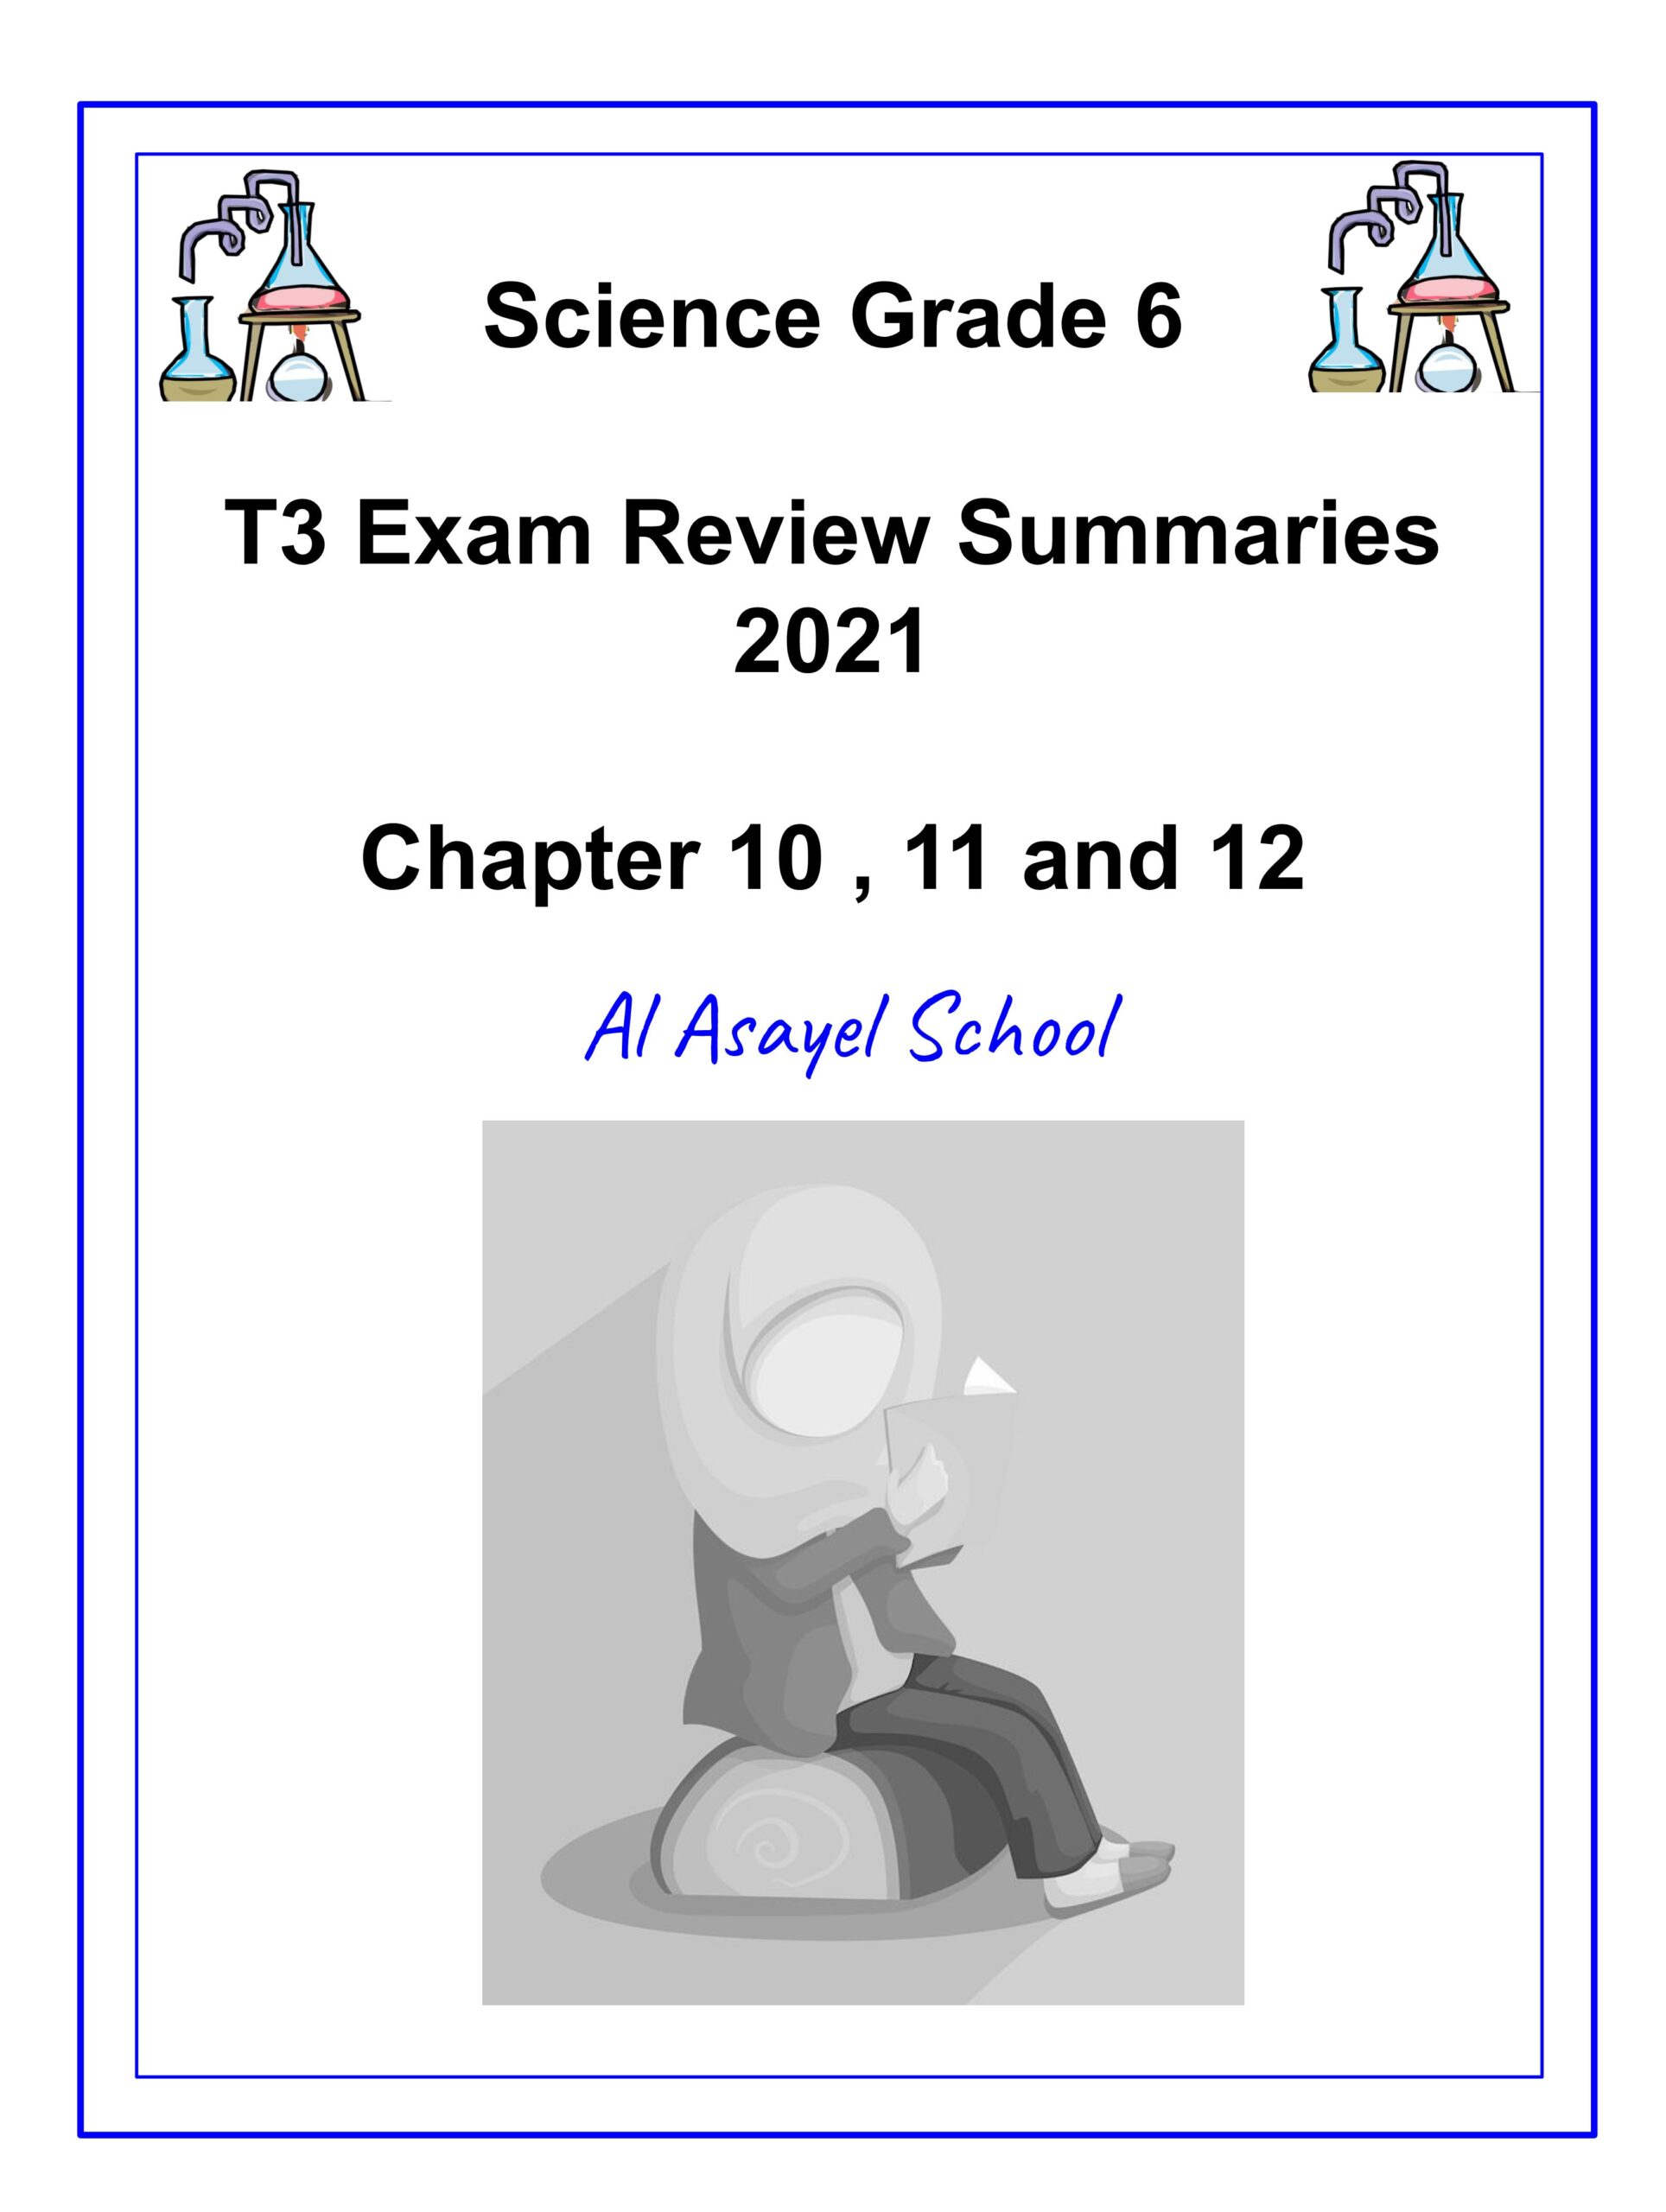 ملخص Exam Review Summaries العلوم المتكاملة الصف السادس 